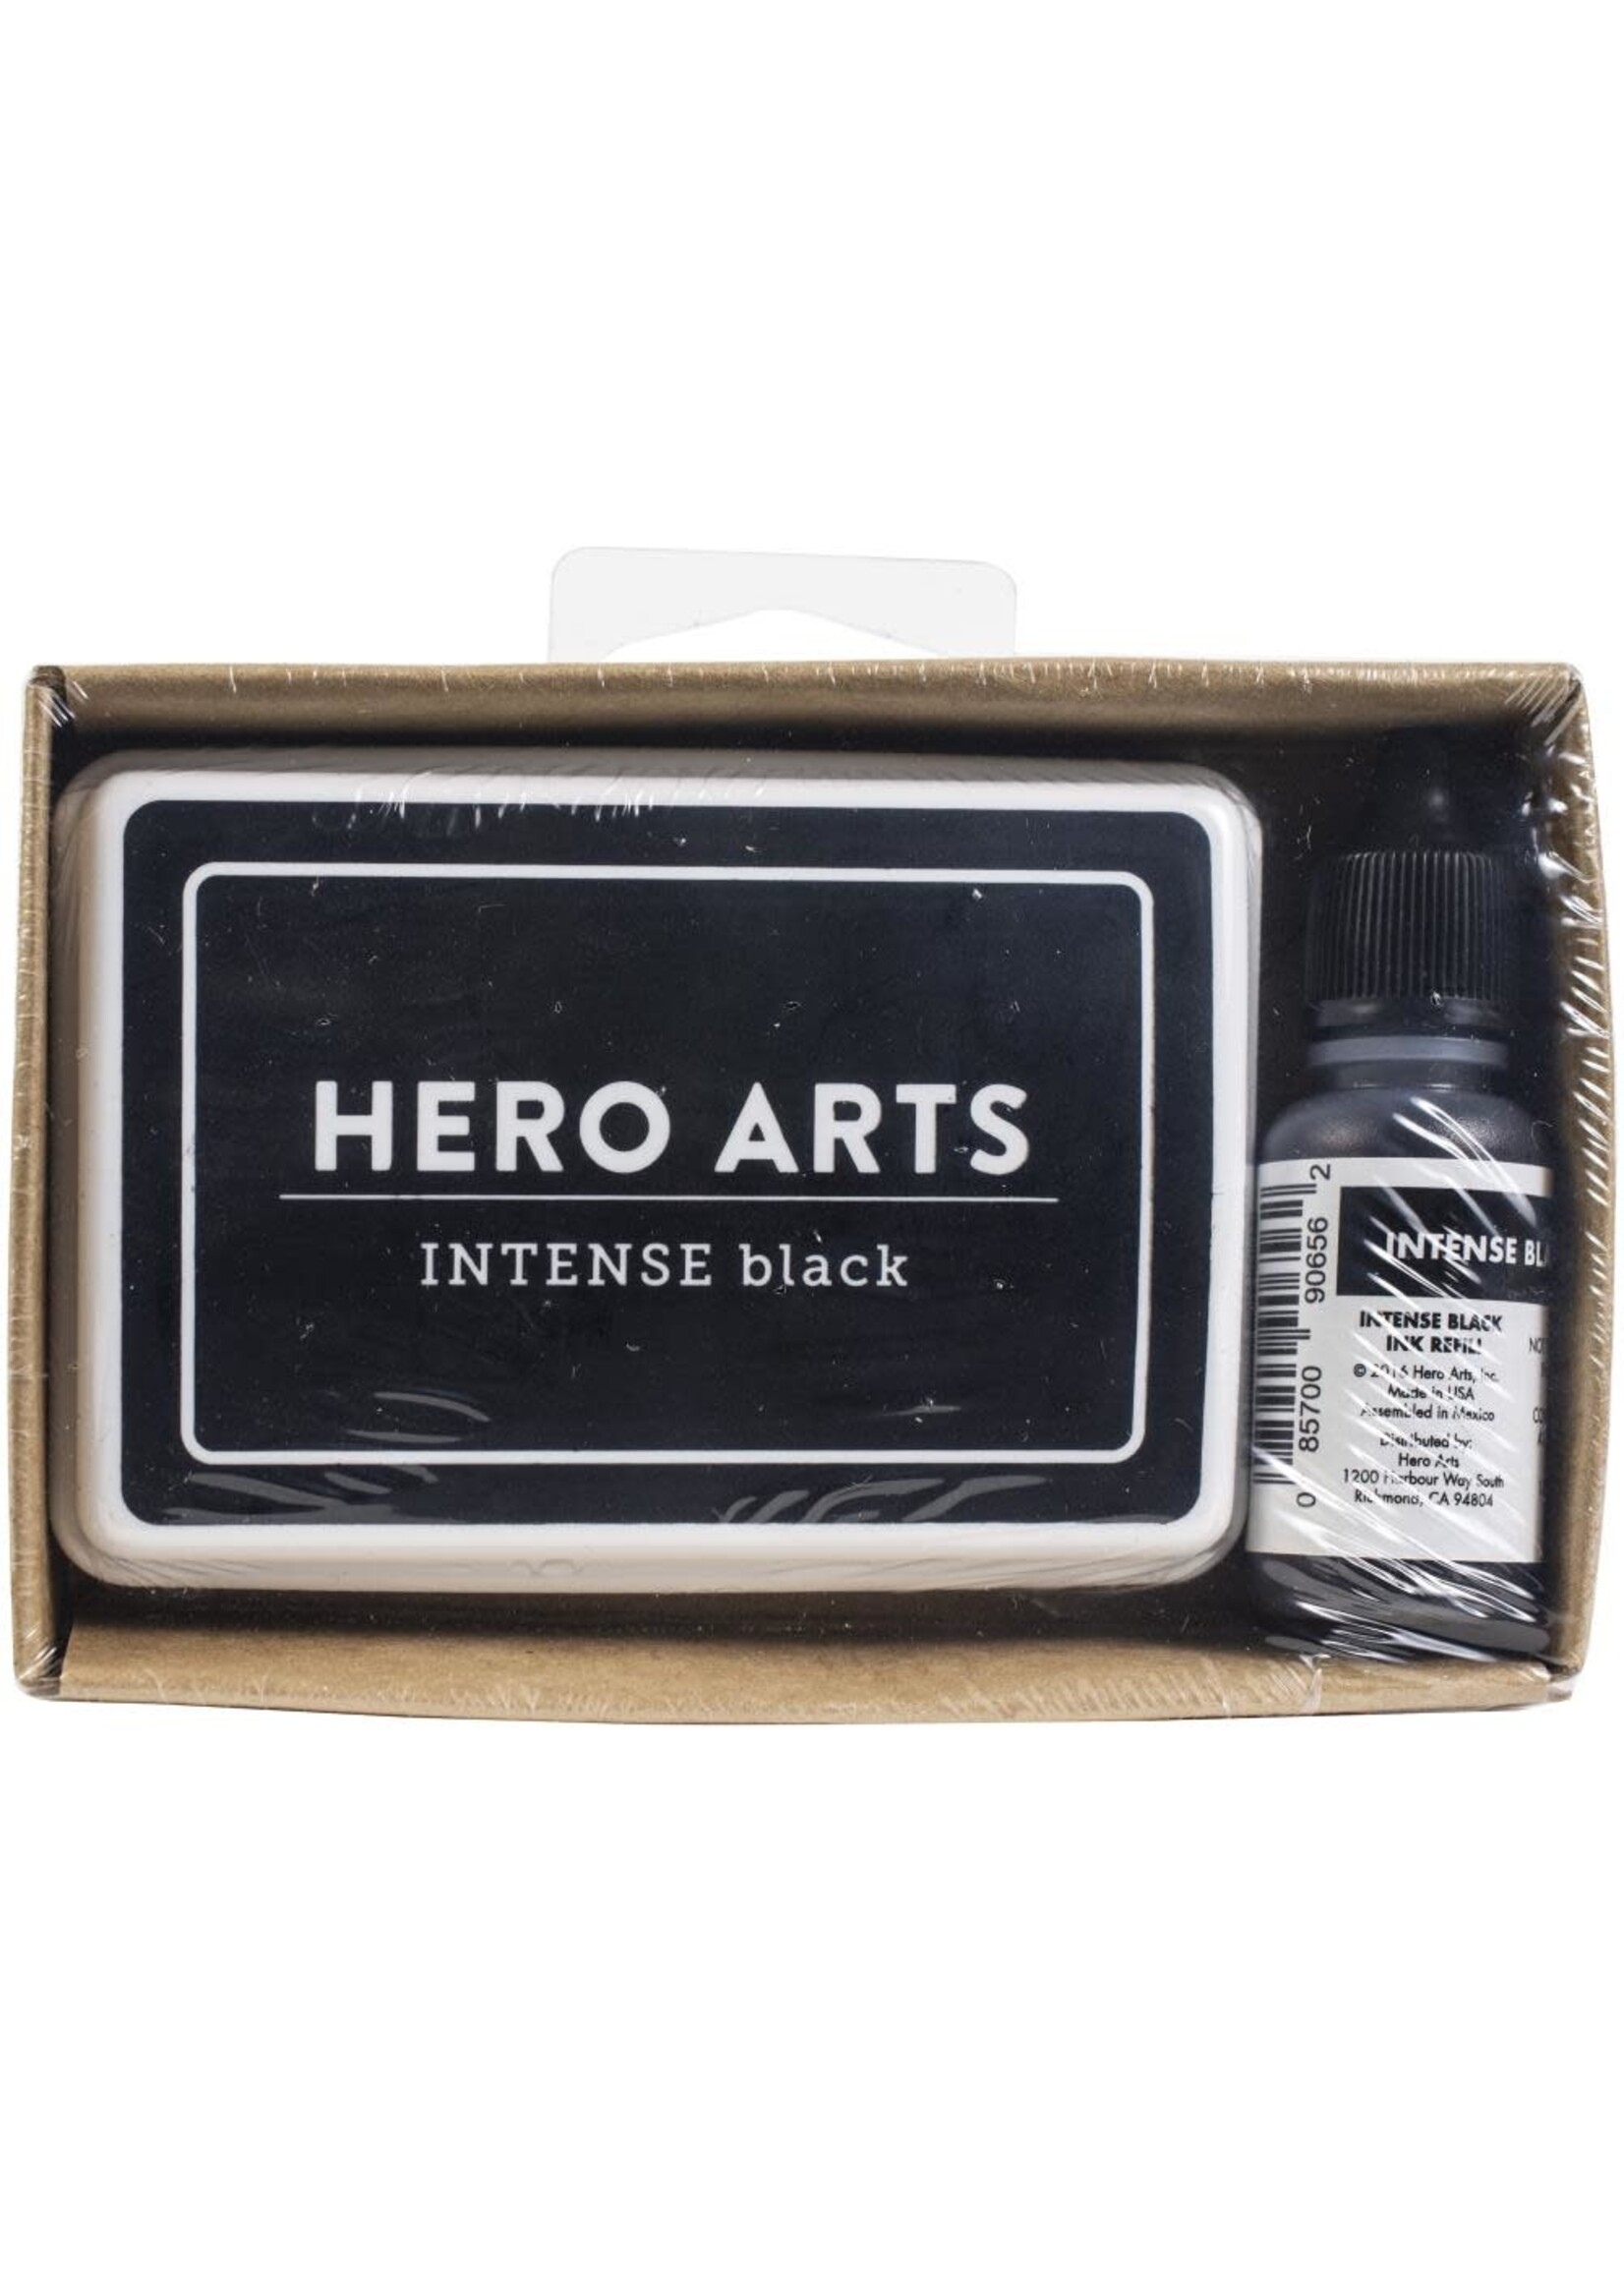 Hero Arts Intense Black Ink Pad & Reinker